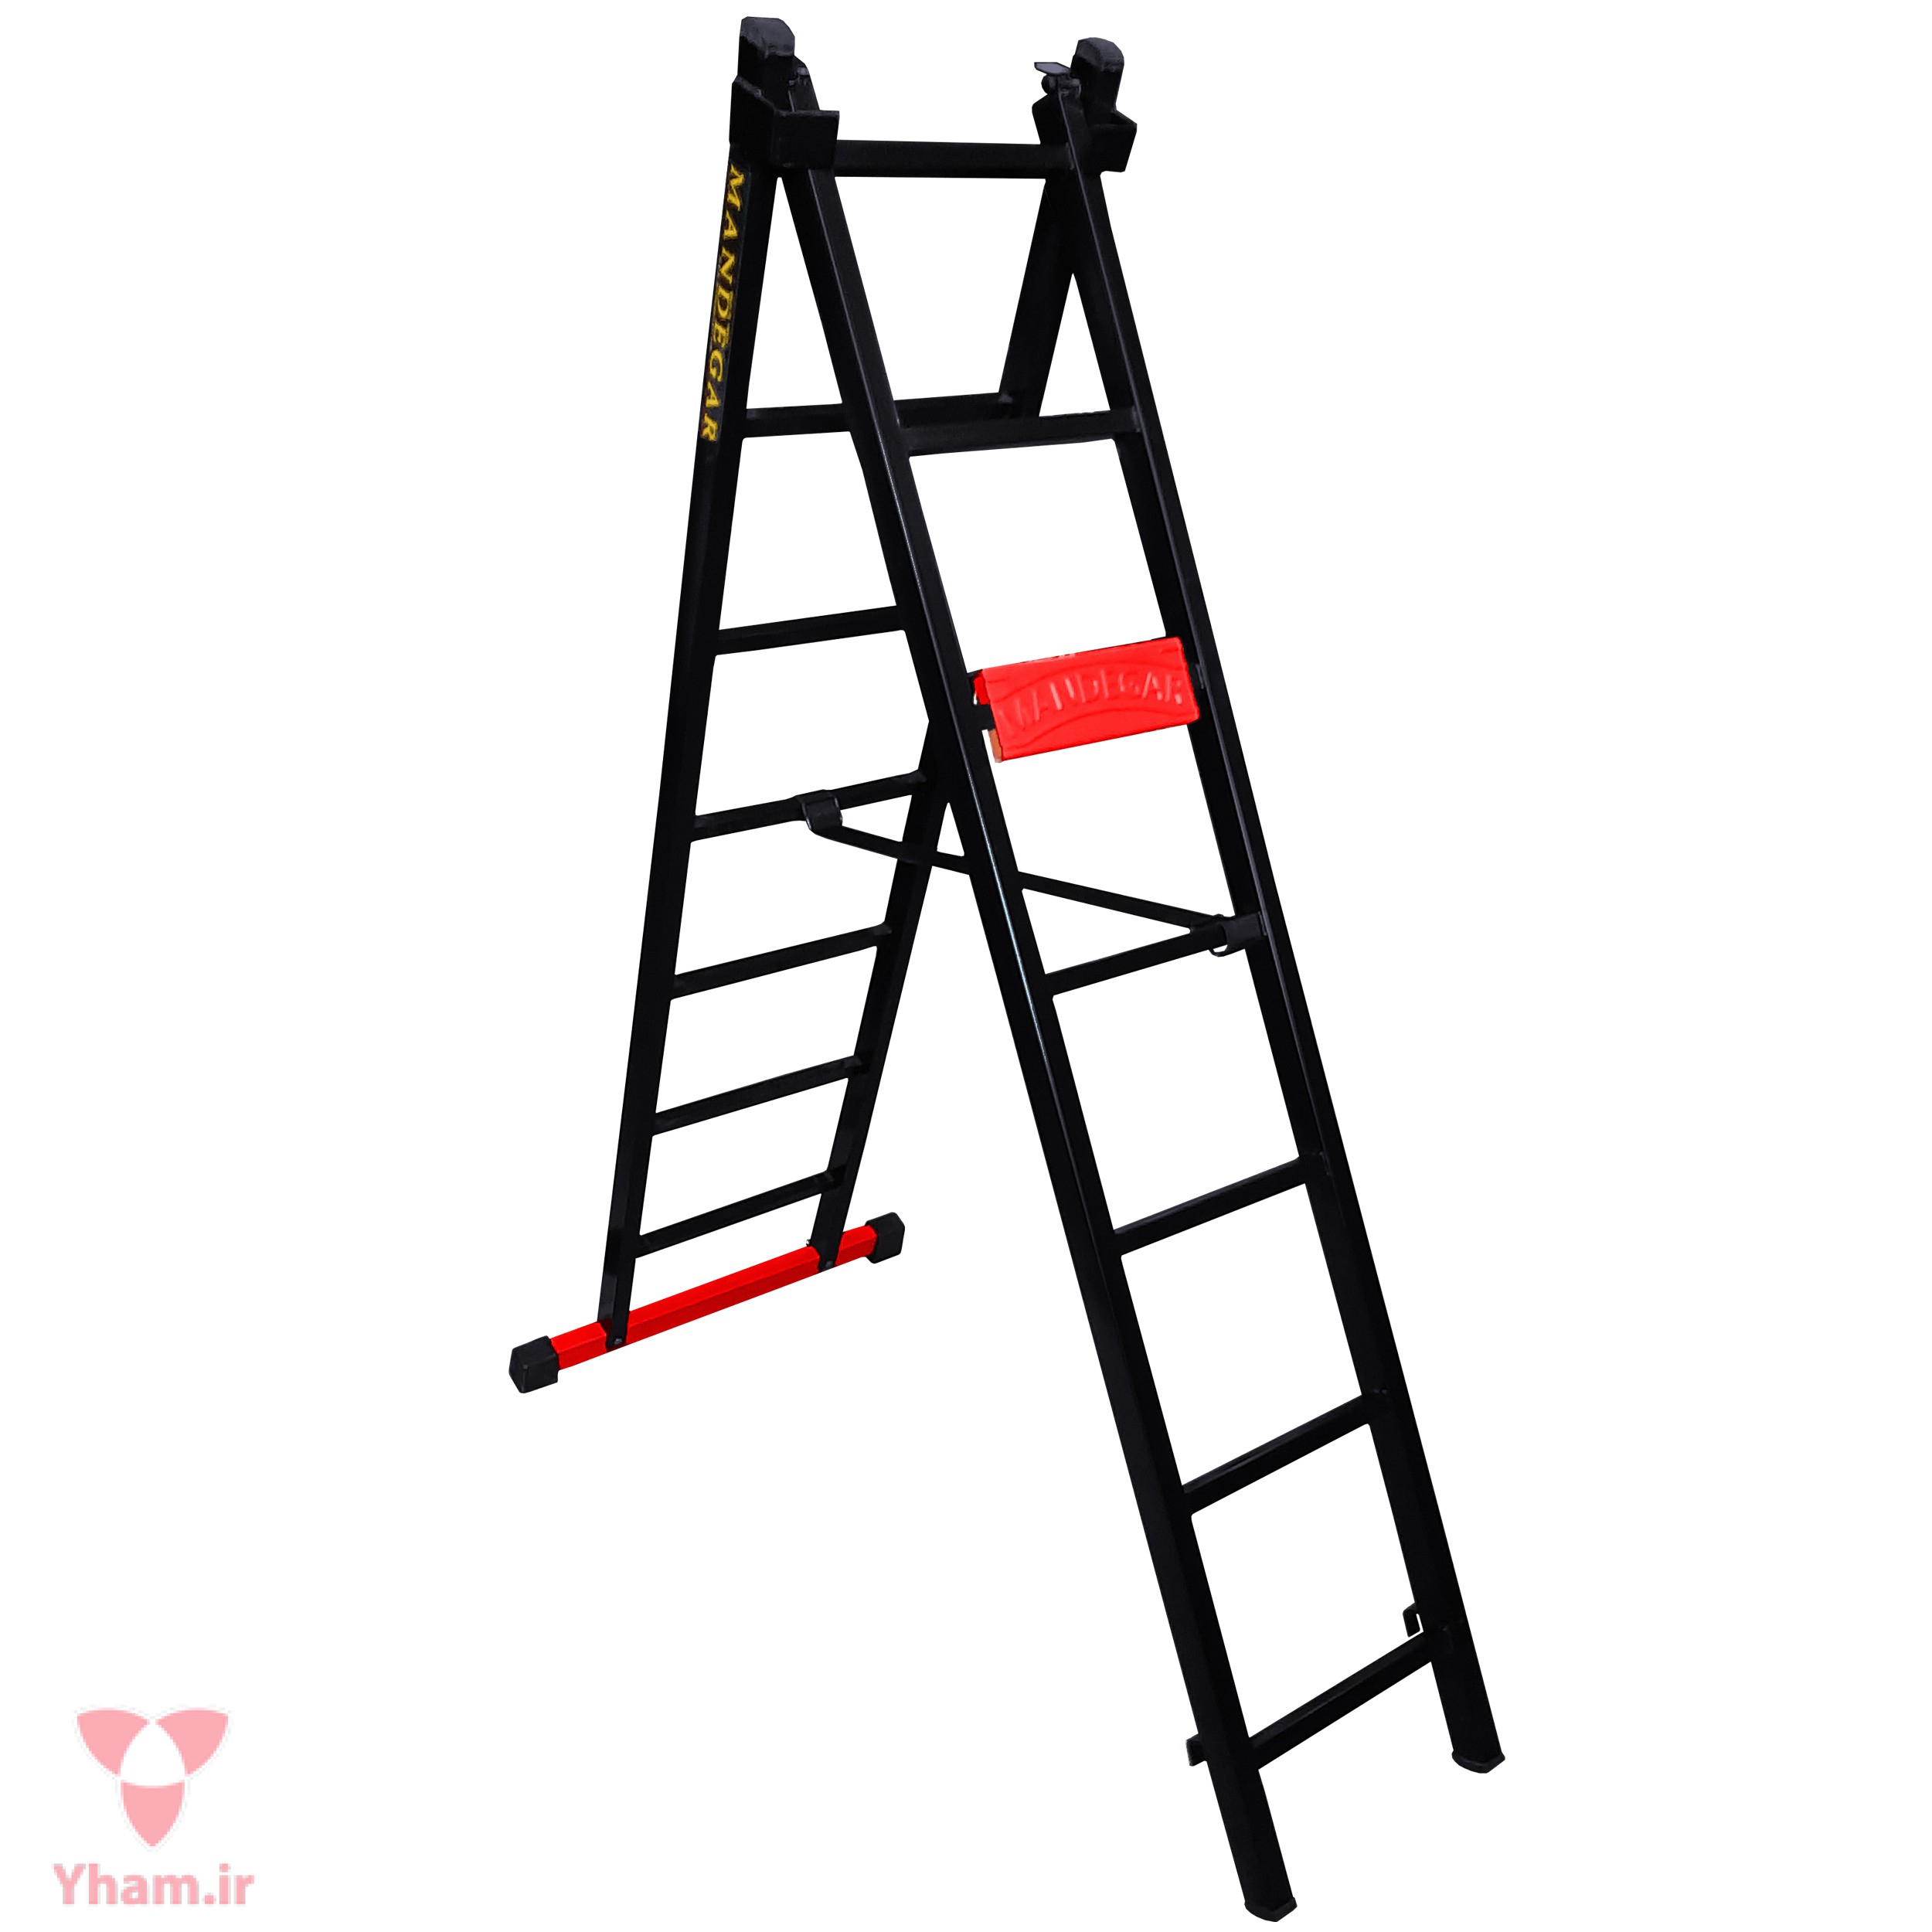 نردبان 14 پله ماندگار مدل پارس به همراه پایه تعادل